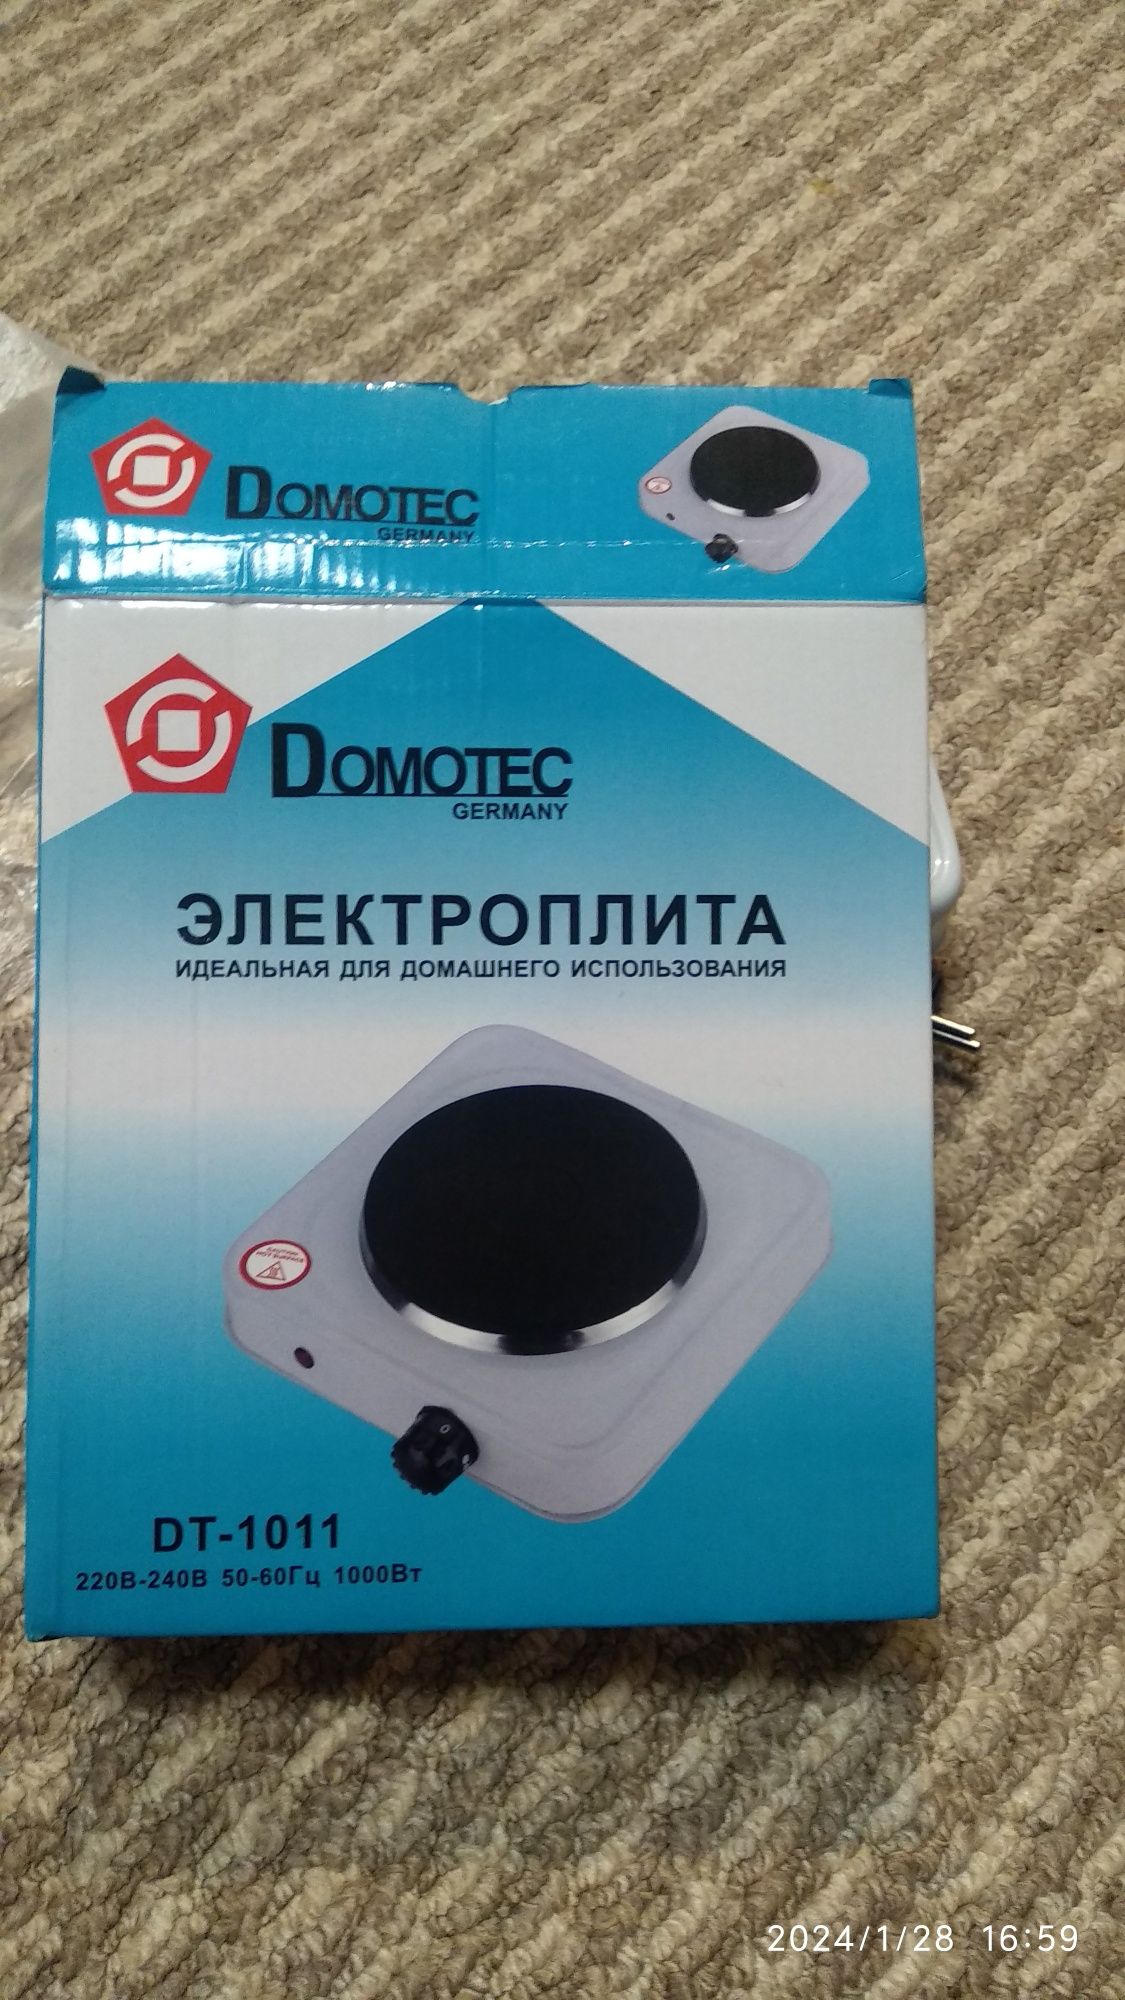 Електроплита Domotec